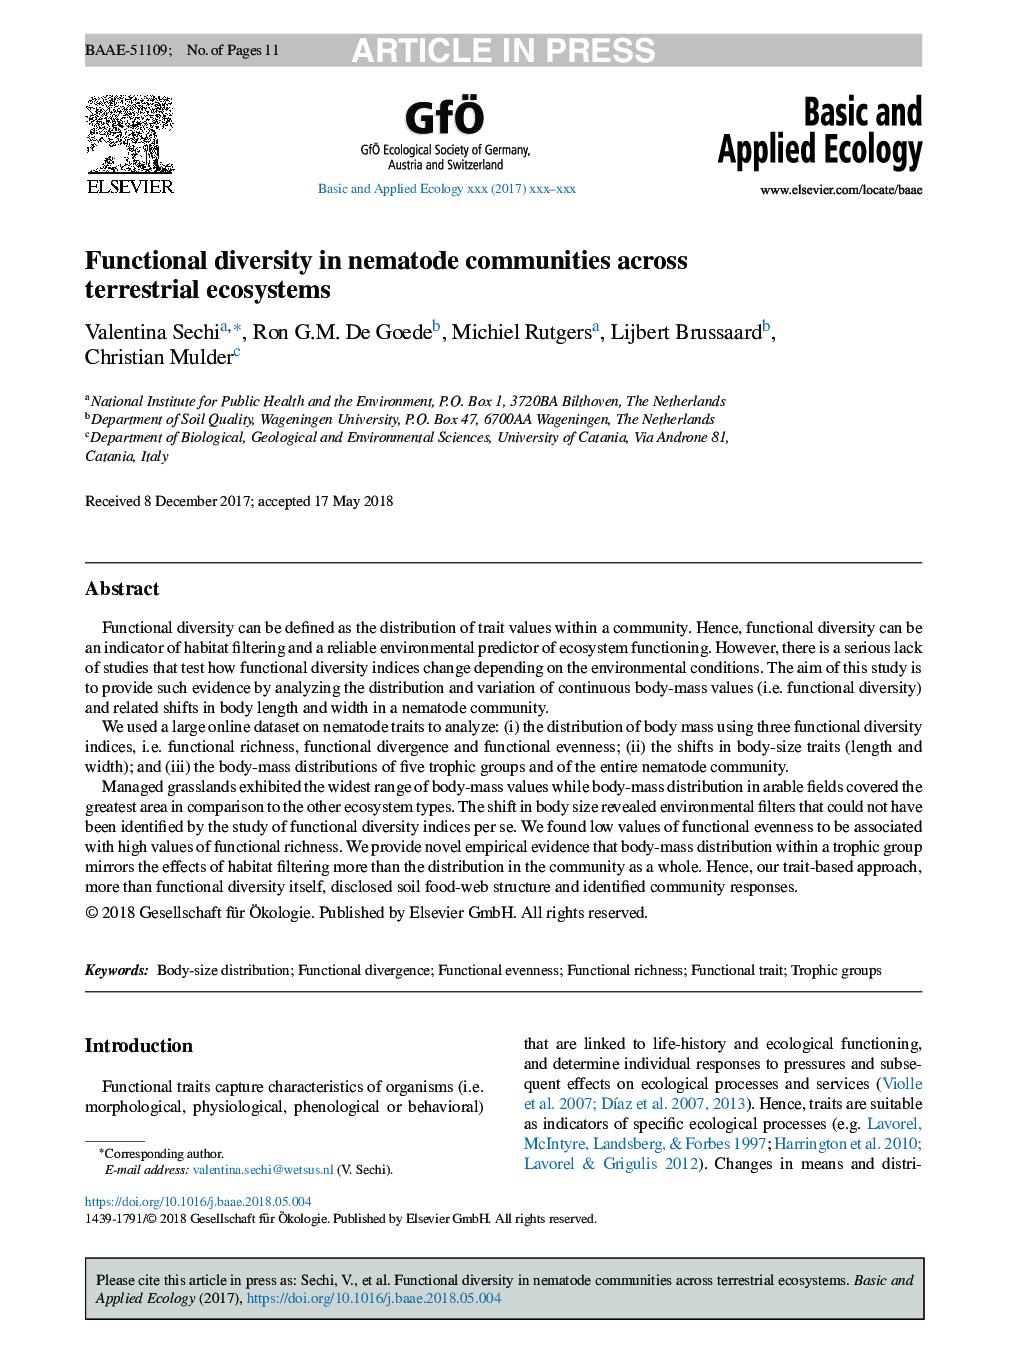 Functional diversity in nematode communities across terrestrial ecosystems